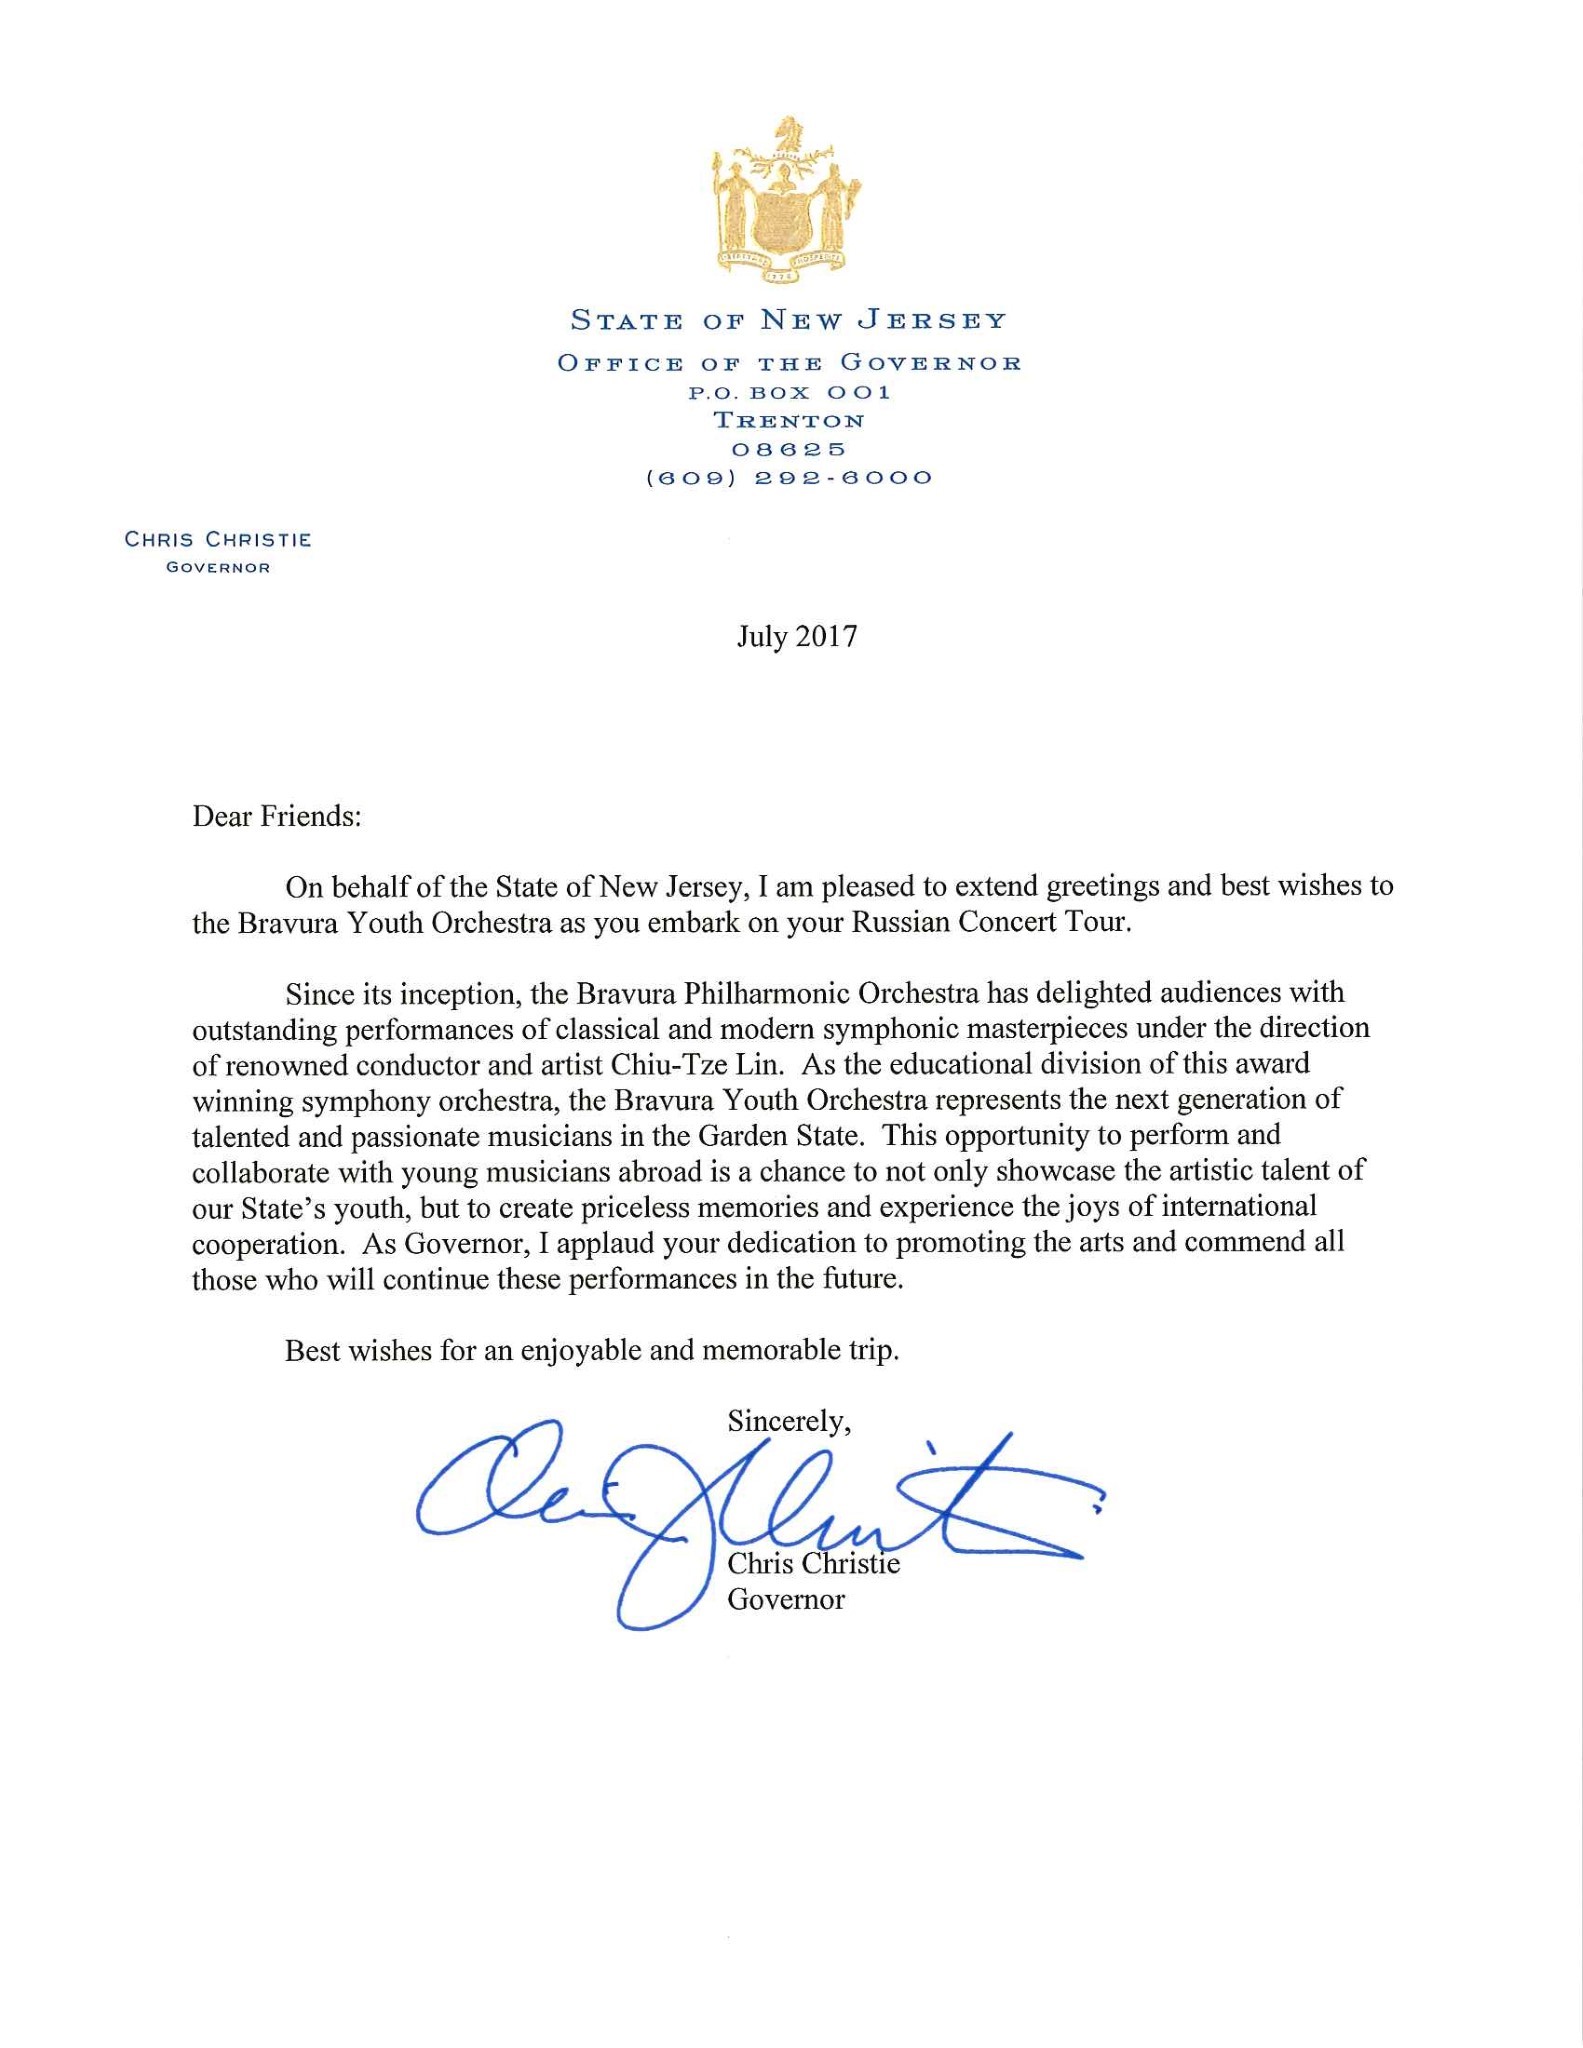 Letter from Gov Christie - jpg.jpg